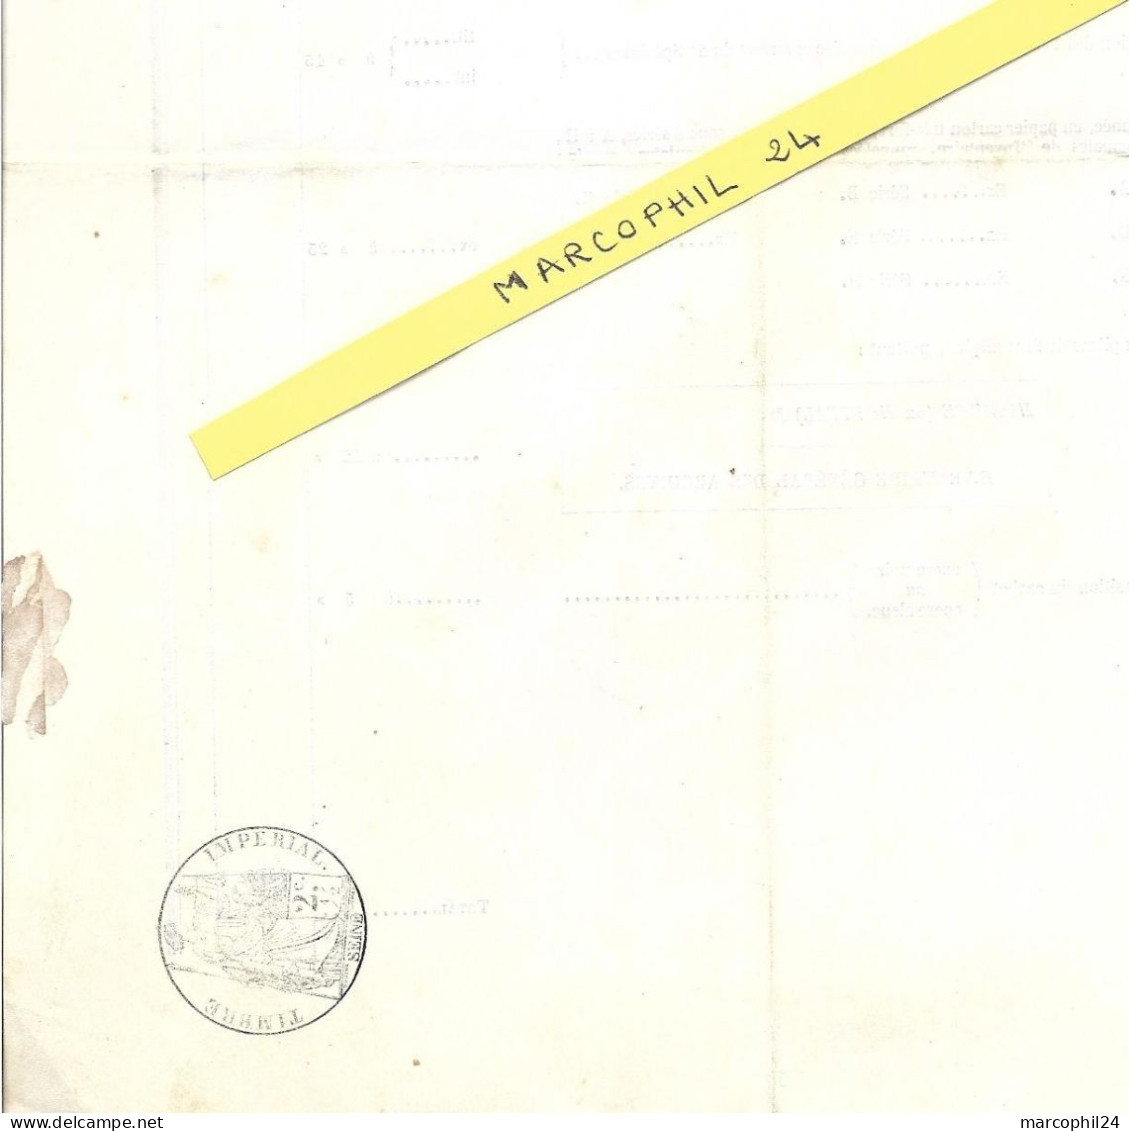 IMPRIMERIE Administrative D'Ad. MOESSARD Et JOUSSET - PARIS - 1854 - 2 Feuilles Avec TIMBRE IMPERIAL Seine 2 C - Imprimerie & Papeterie